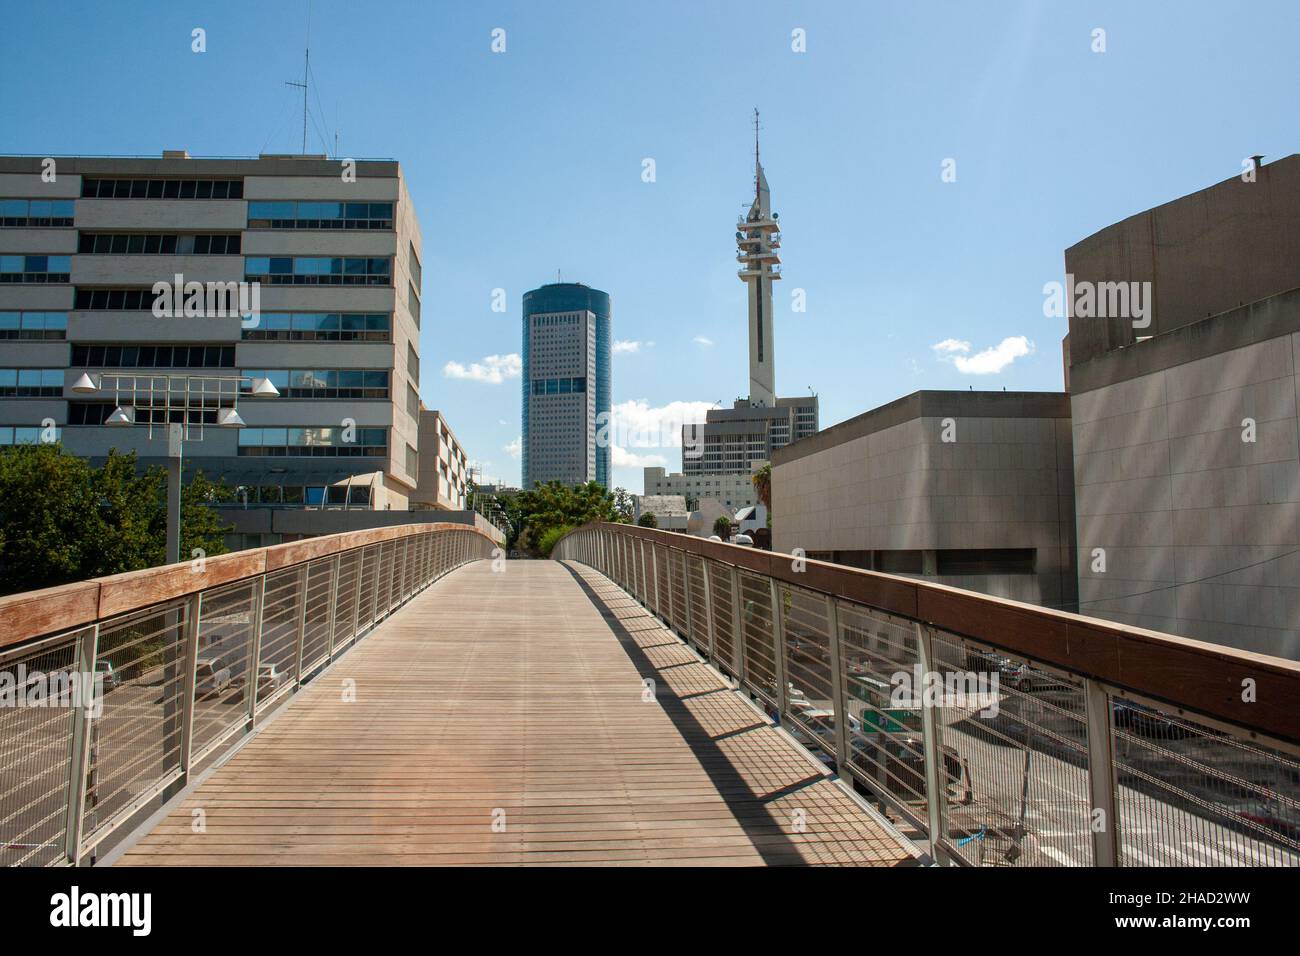 Tel Aviv, Ponte pedonale con il District Court sulla sinistra e il Museo d'Arte di Tel Aviv sulla destra Foto Stock